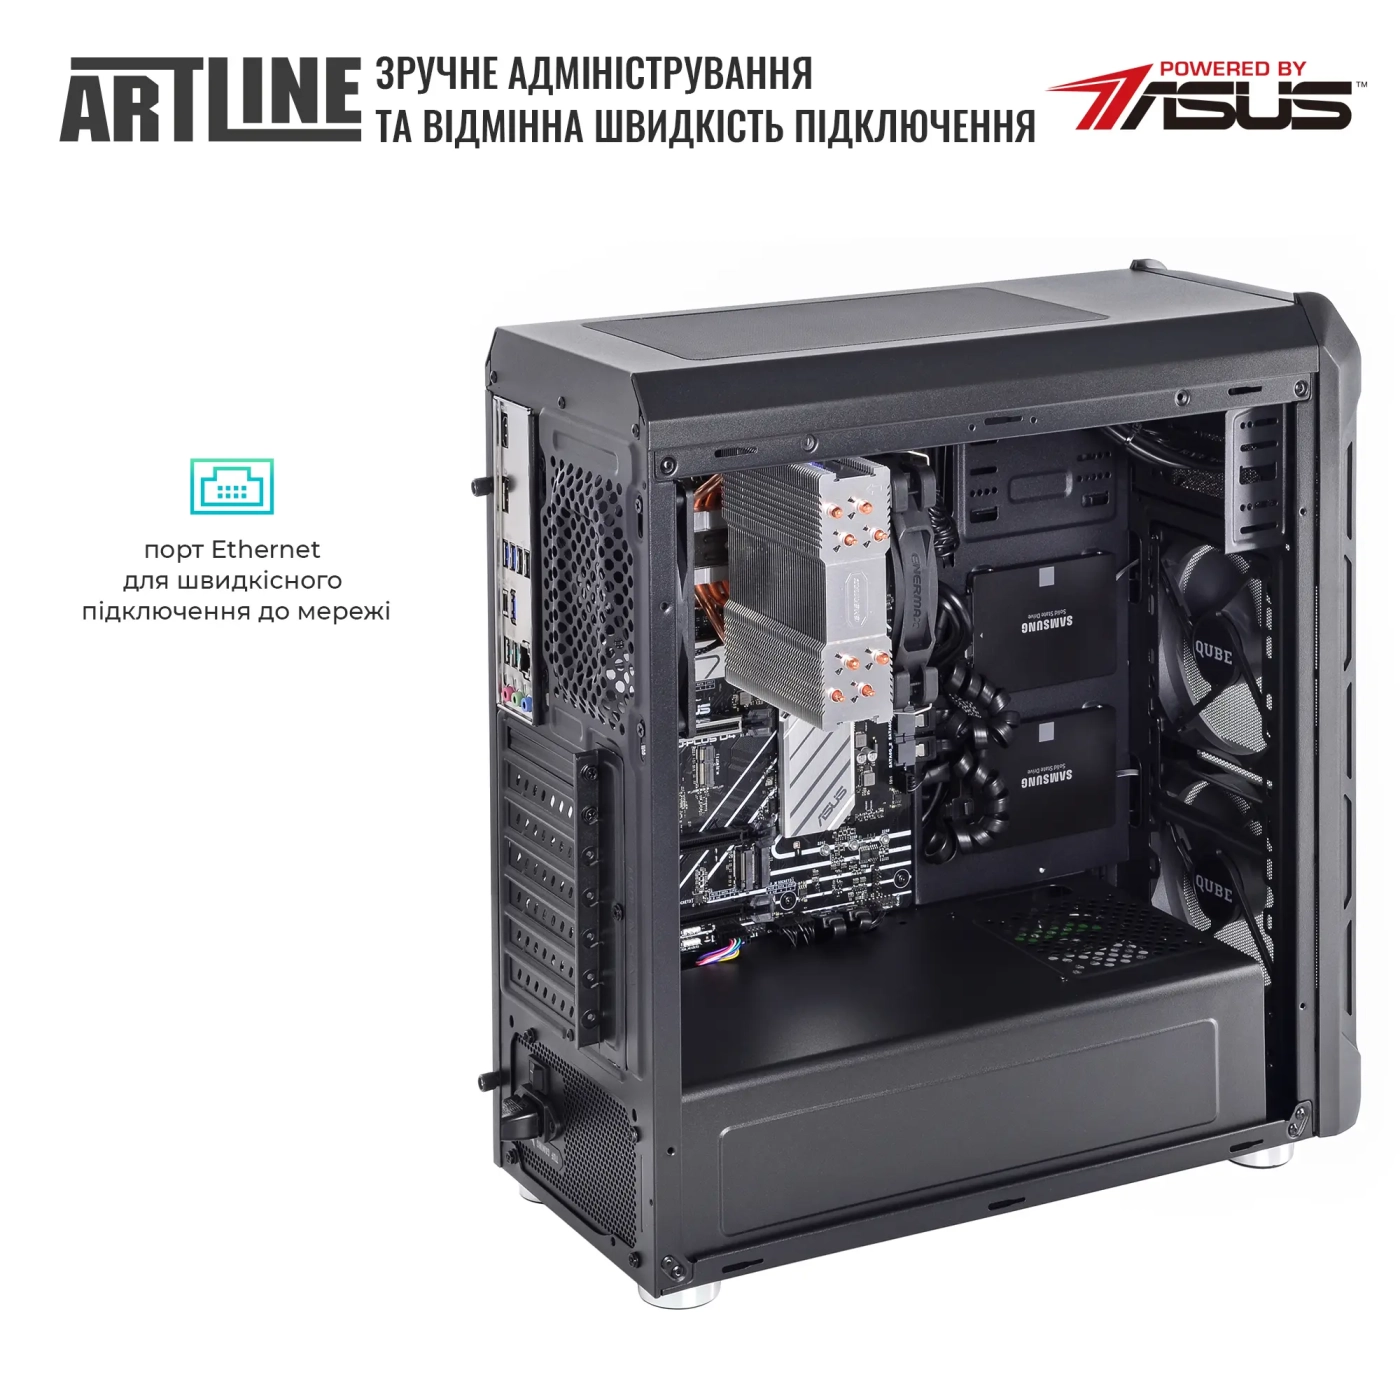 Купить Сервер ARTLINE Business T25 (T25v39) - фото 7